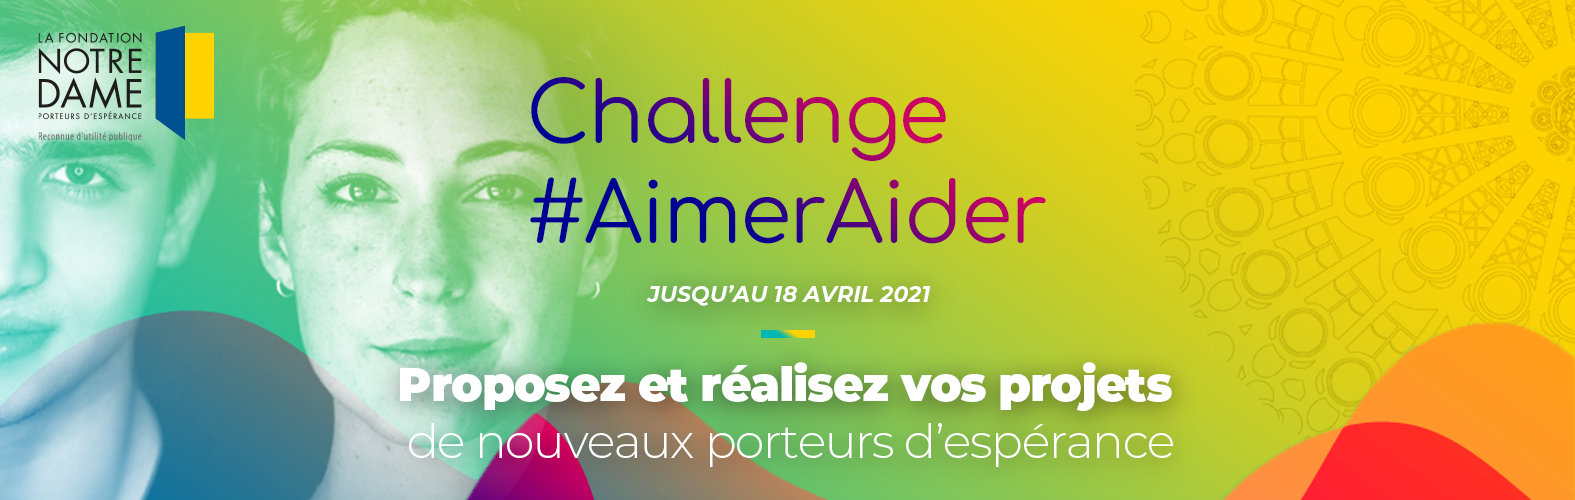 Challenge #AimerAider